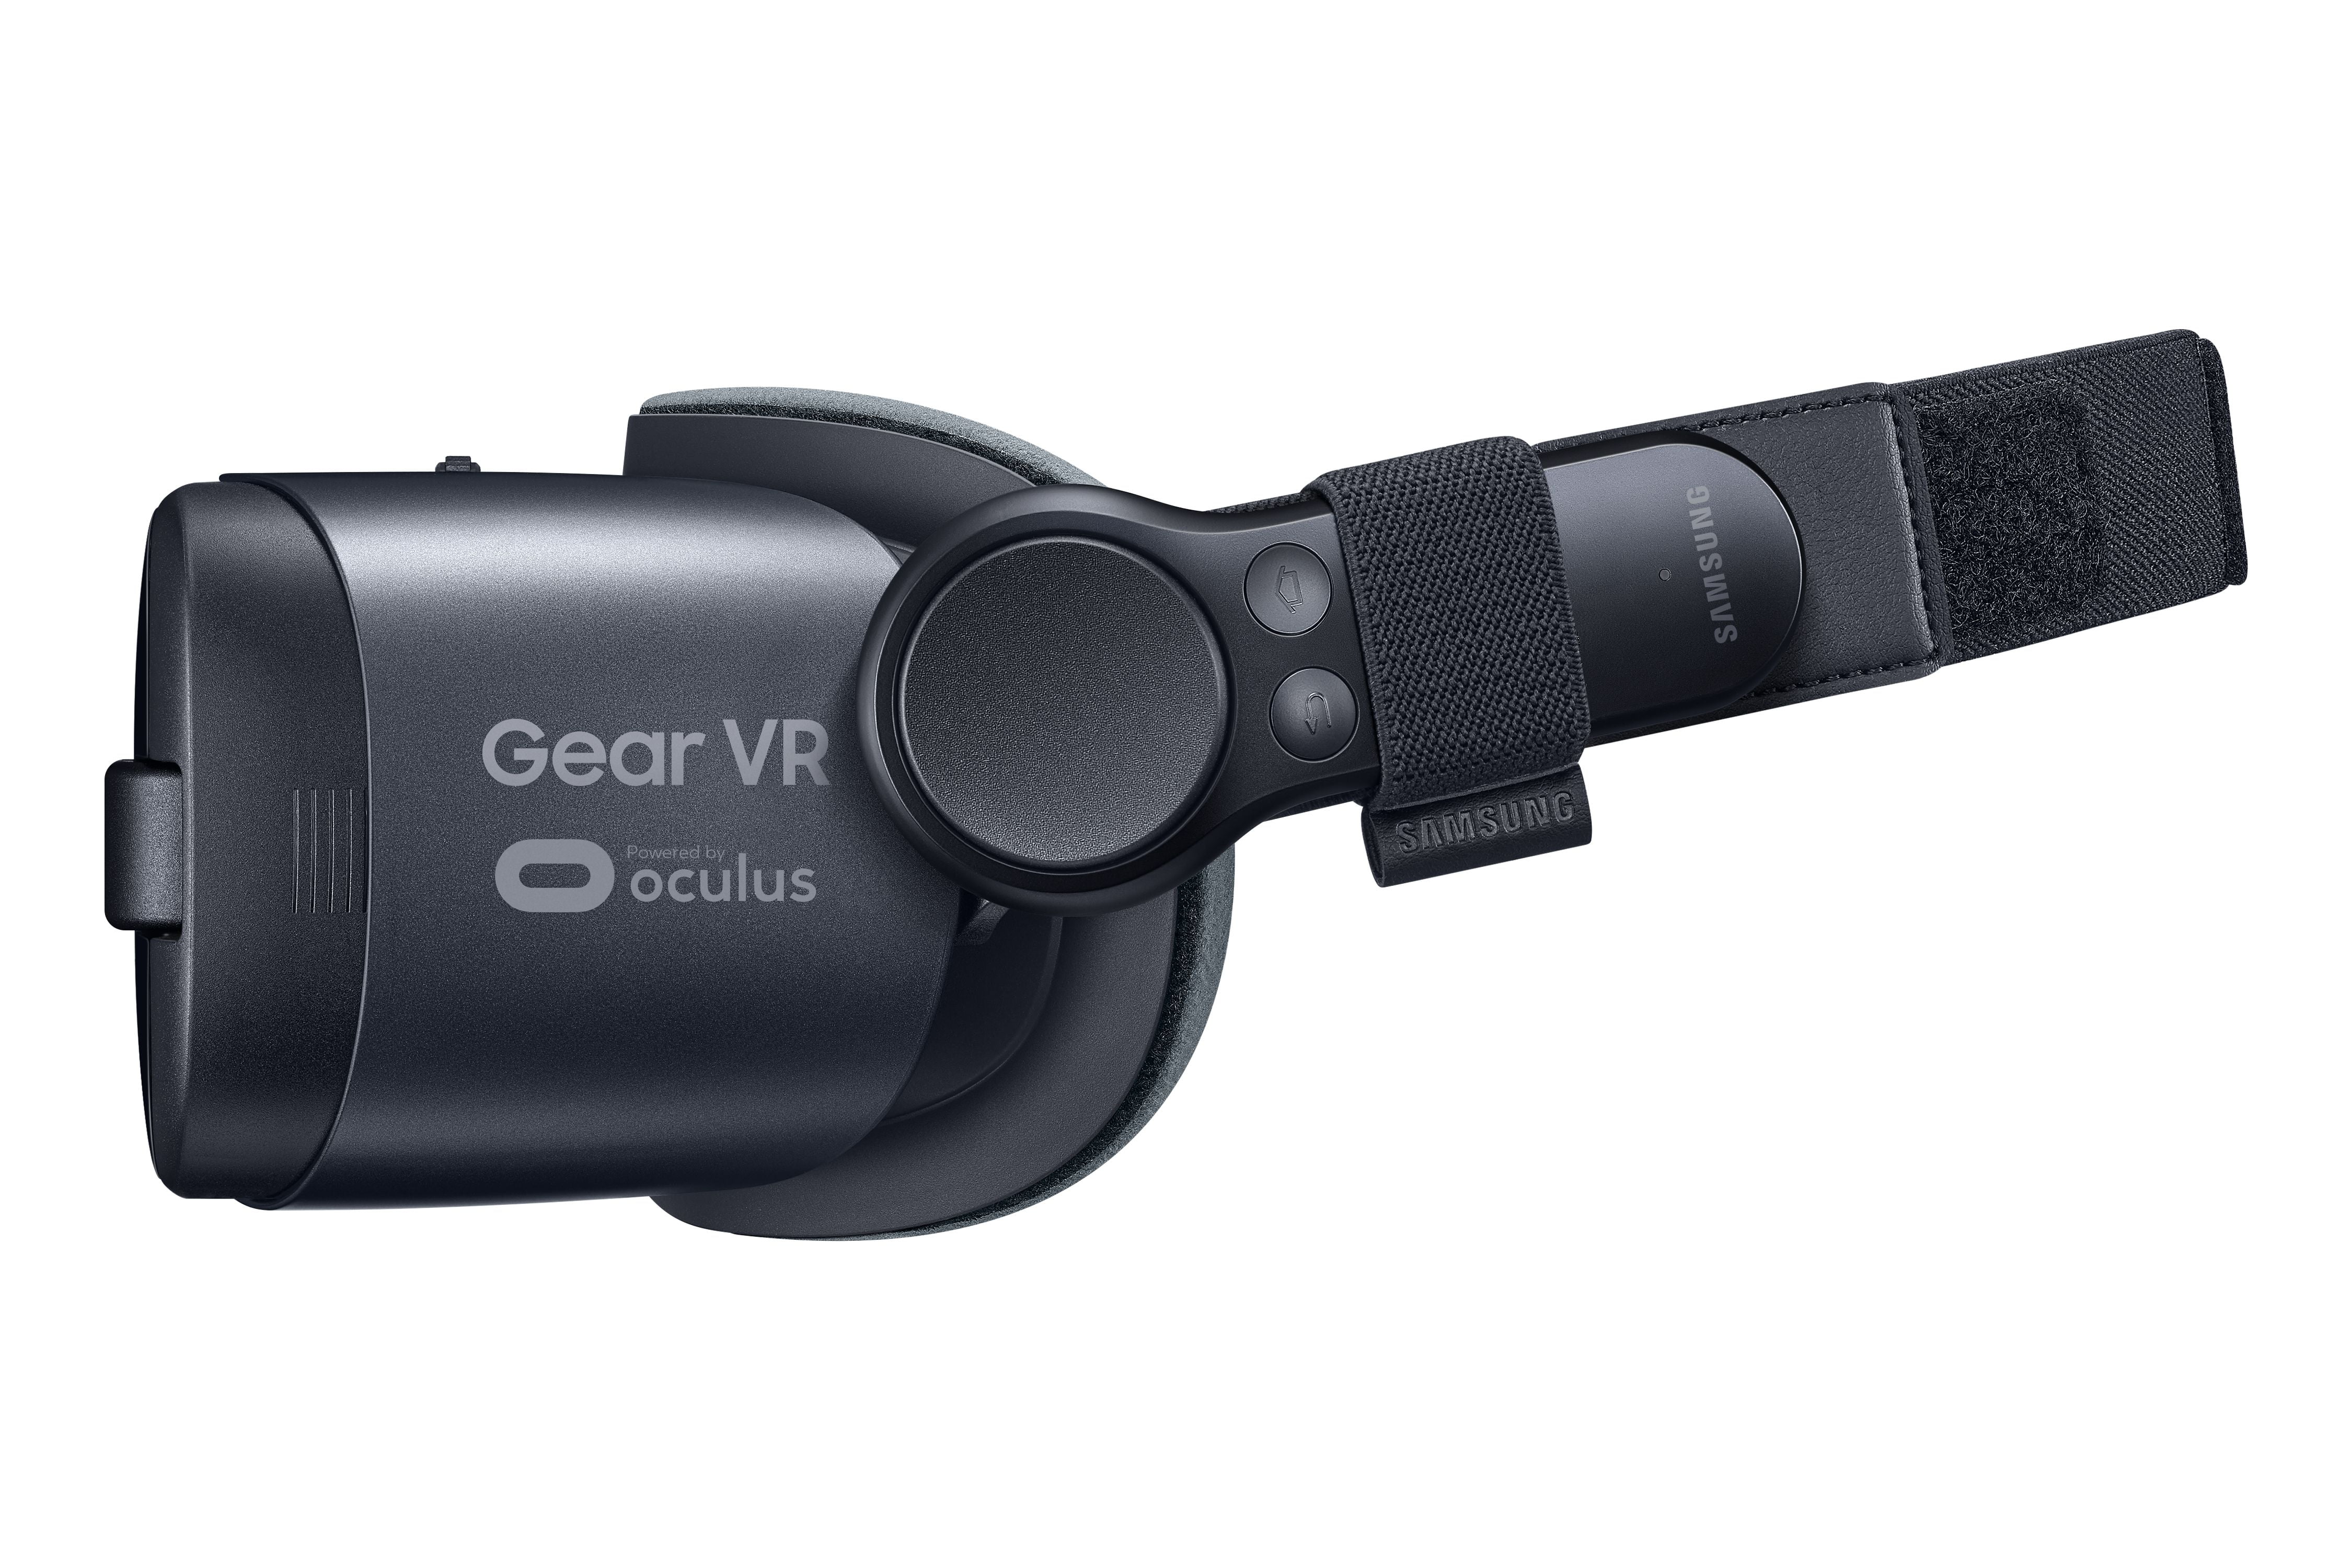 Samsung S8 AU + Gear VR | www.myglobaltax.com